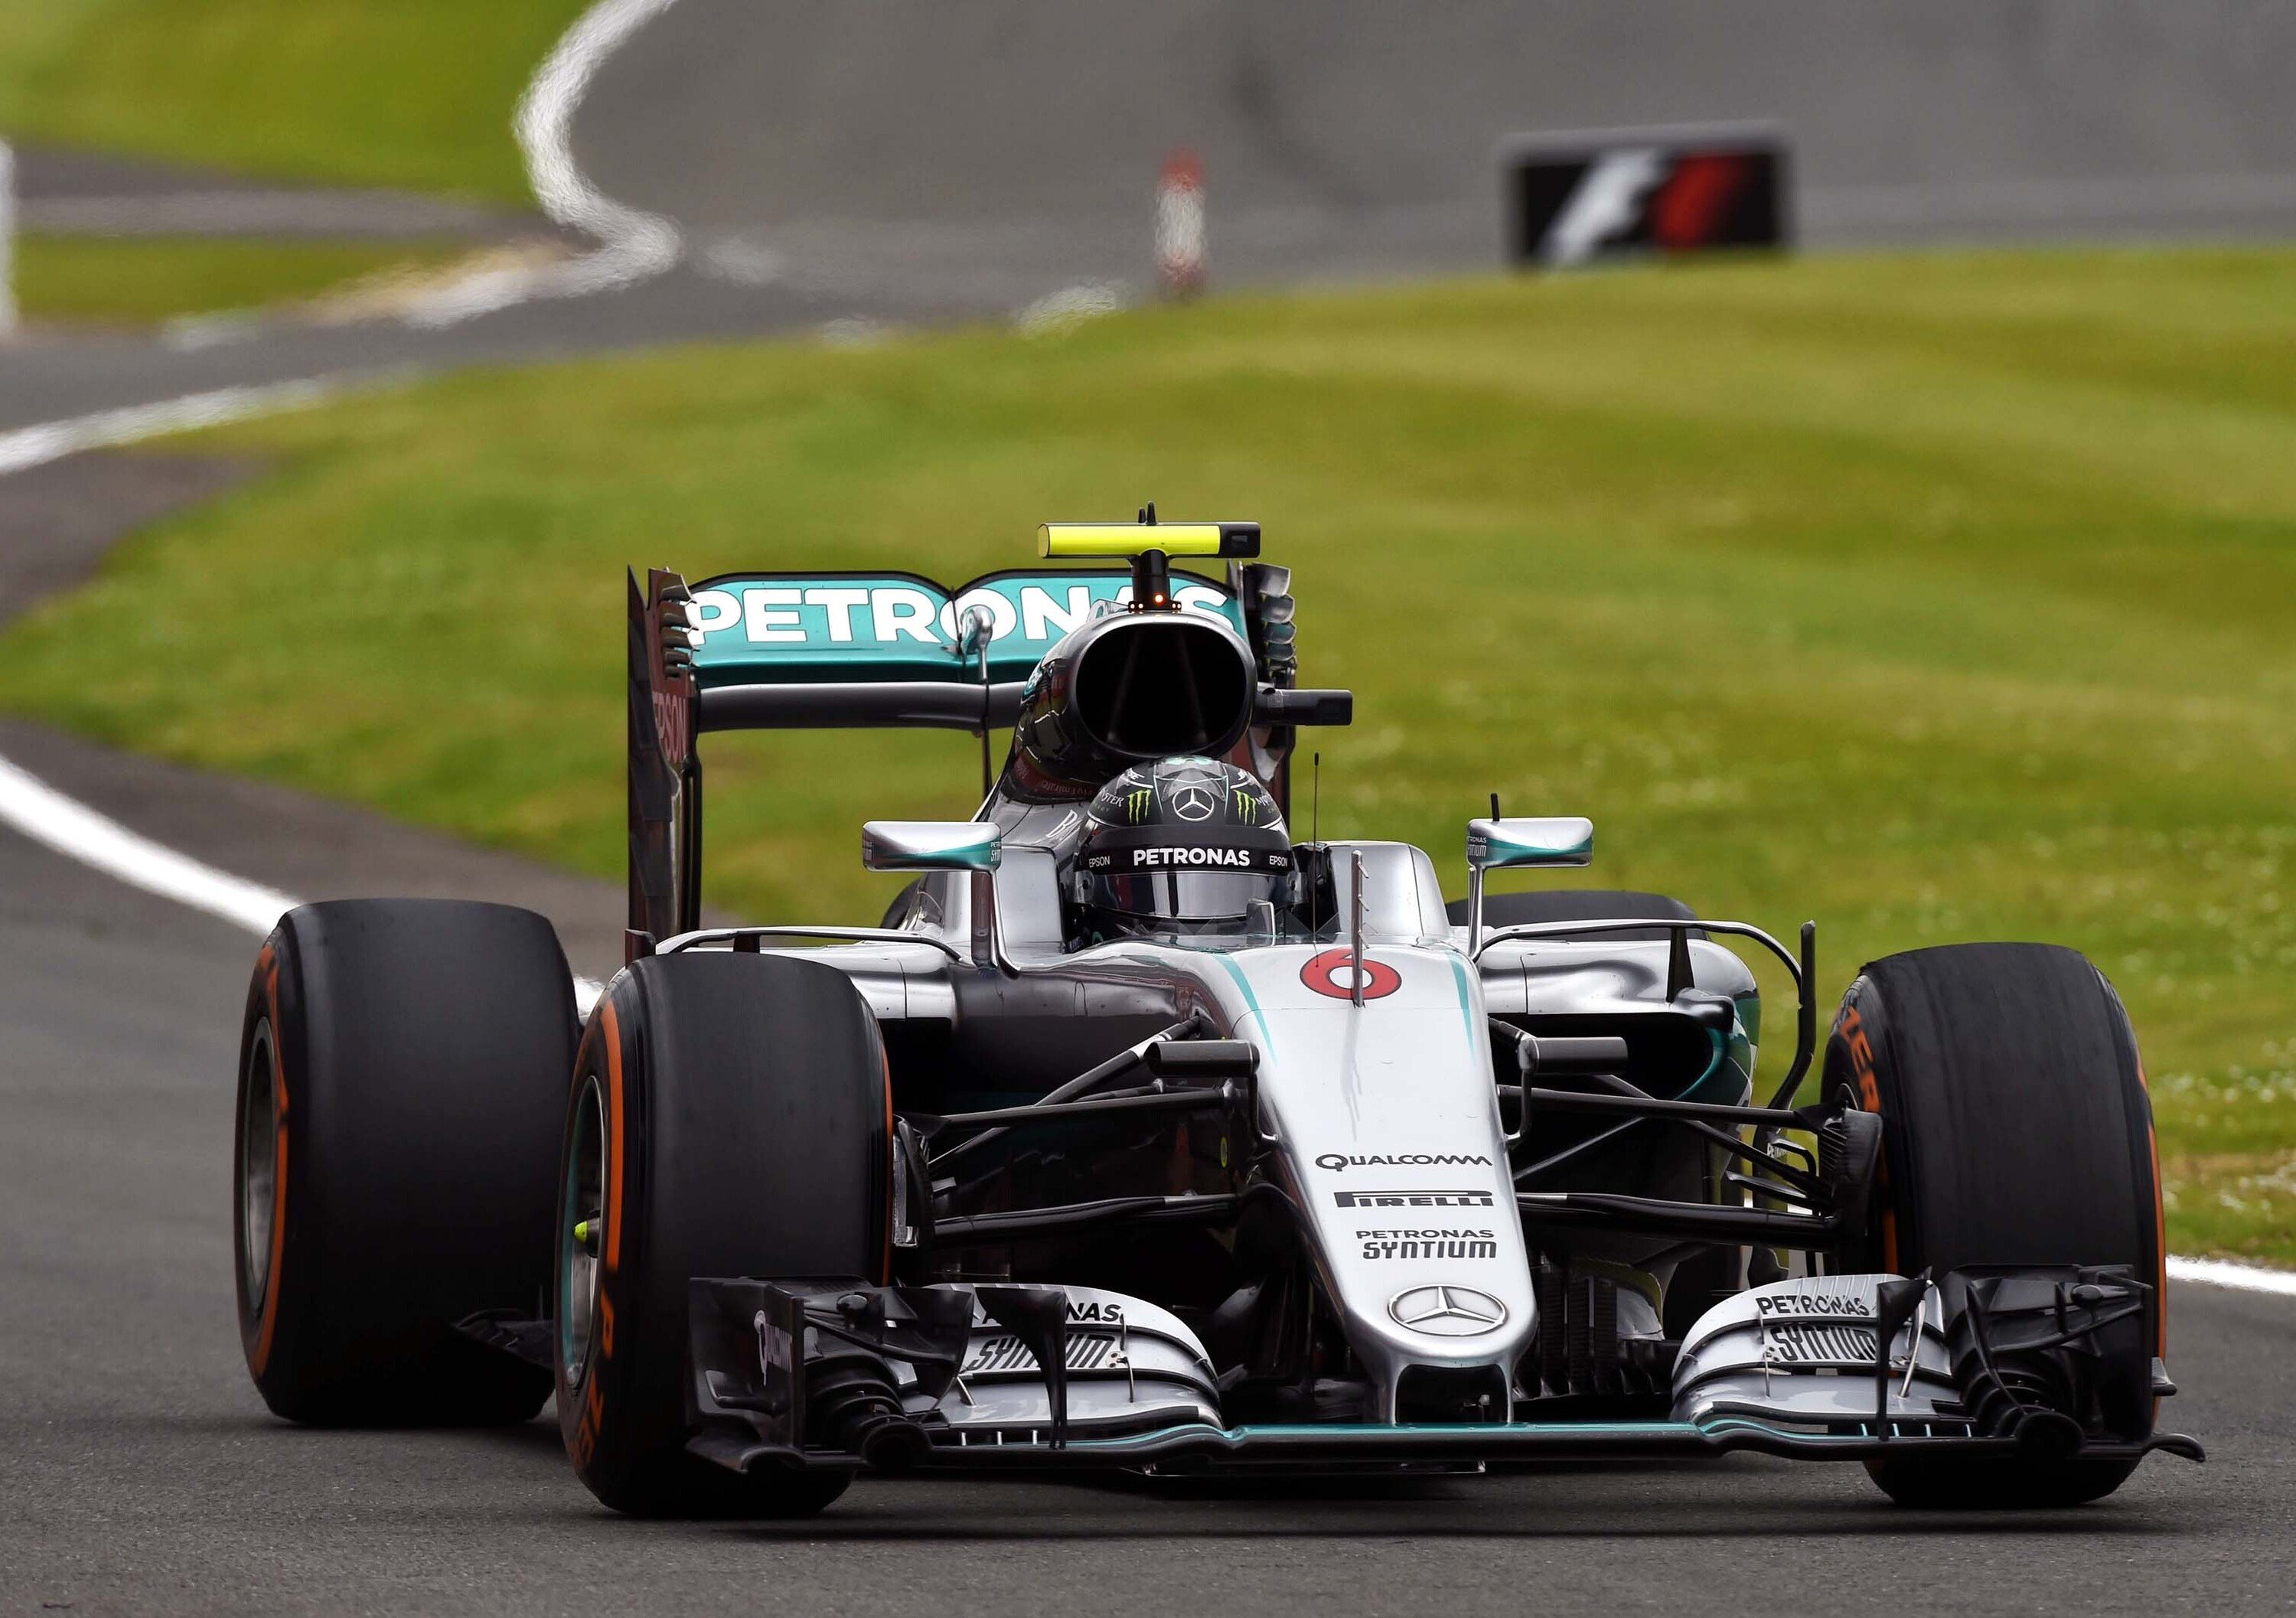 F1, Gp Gran Bretagna 2016: penalit&agrave; di 10 secondi per Rosberg